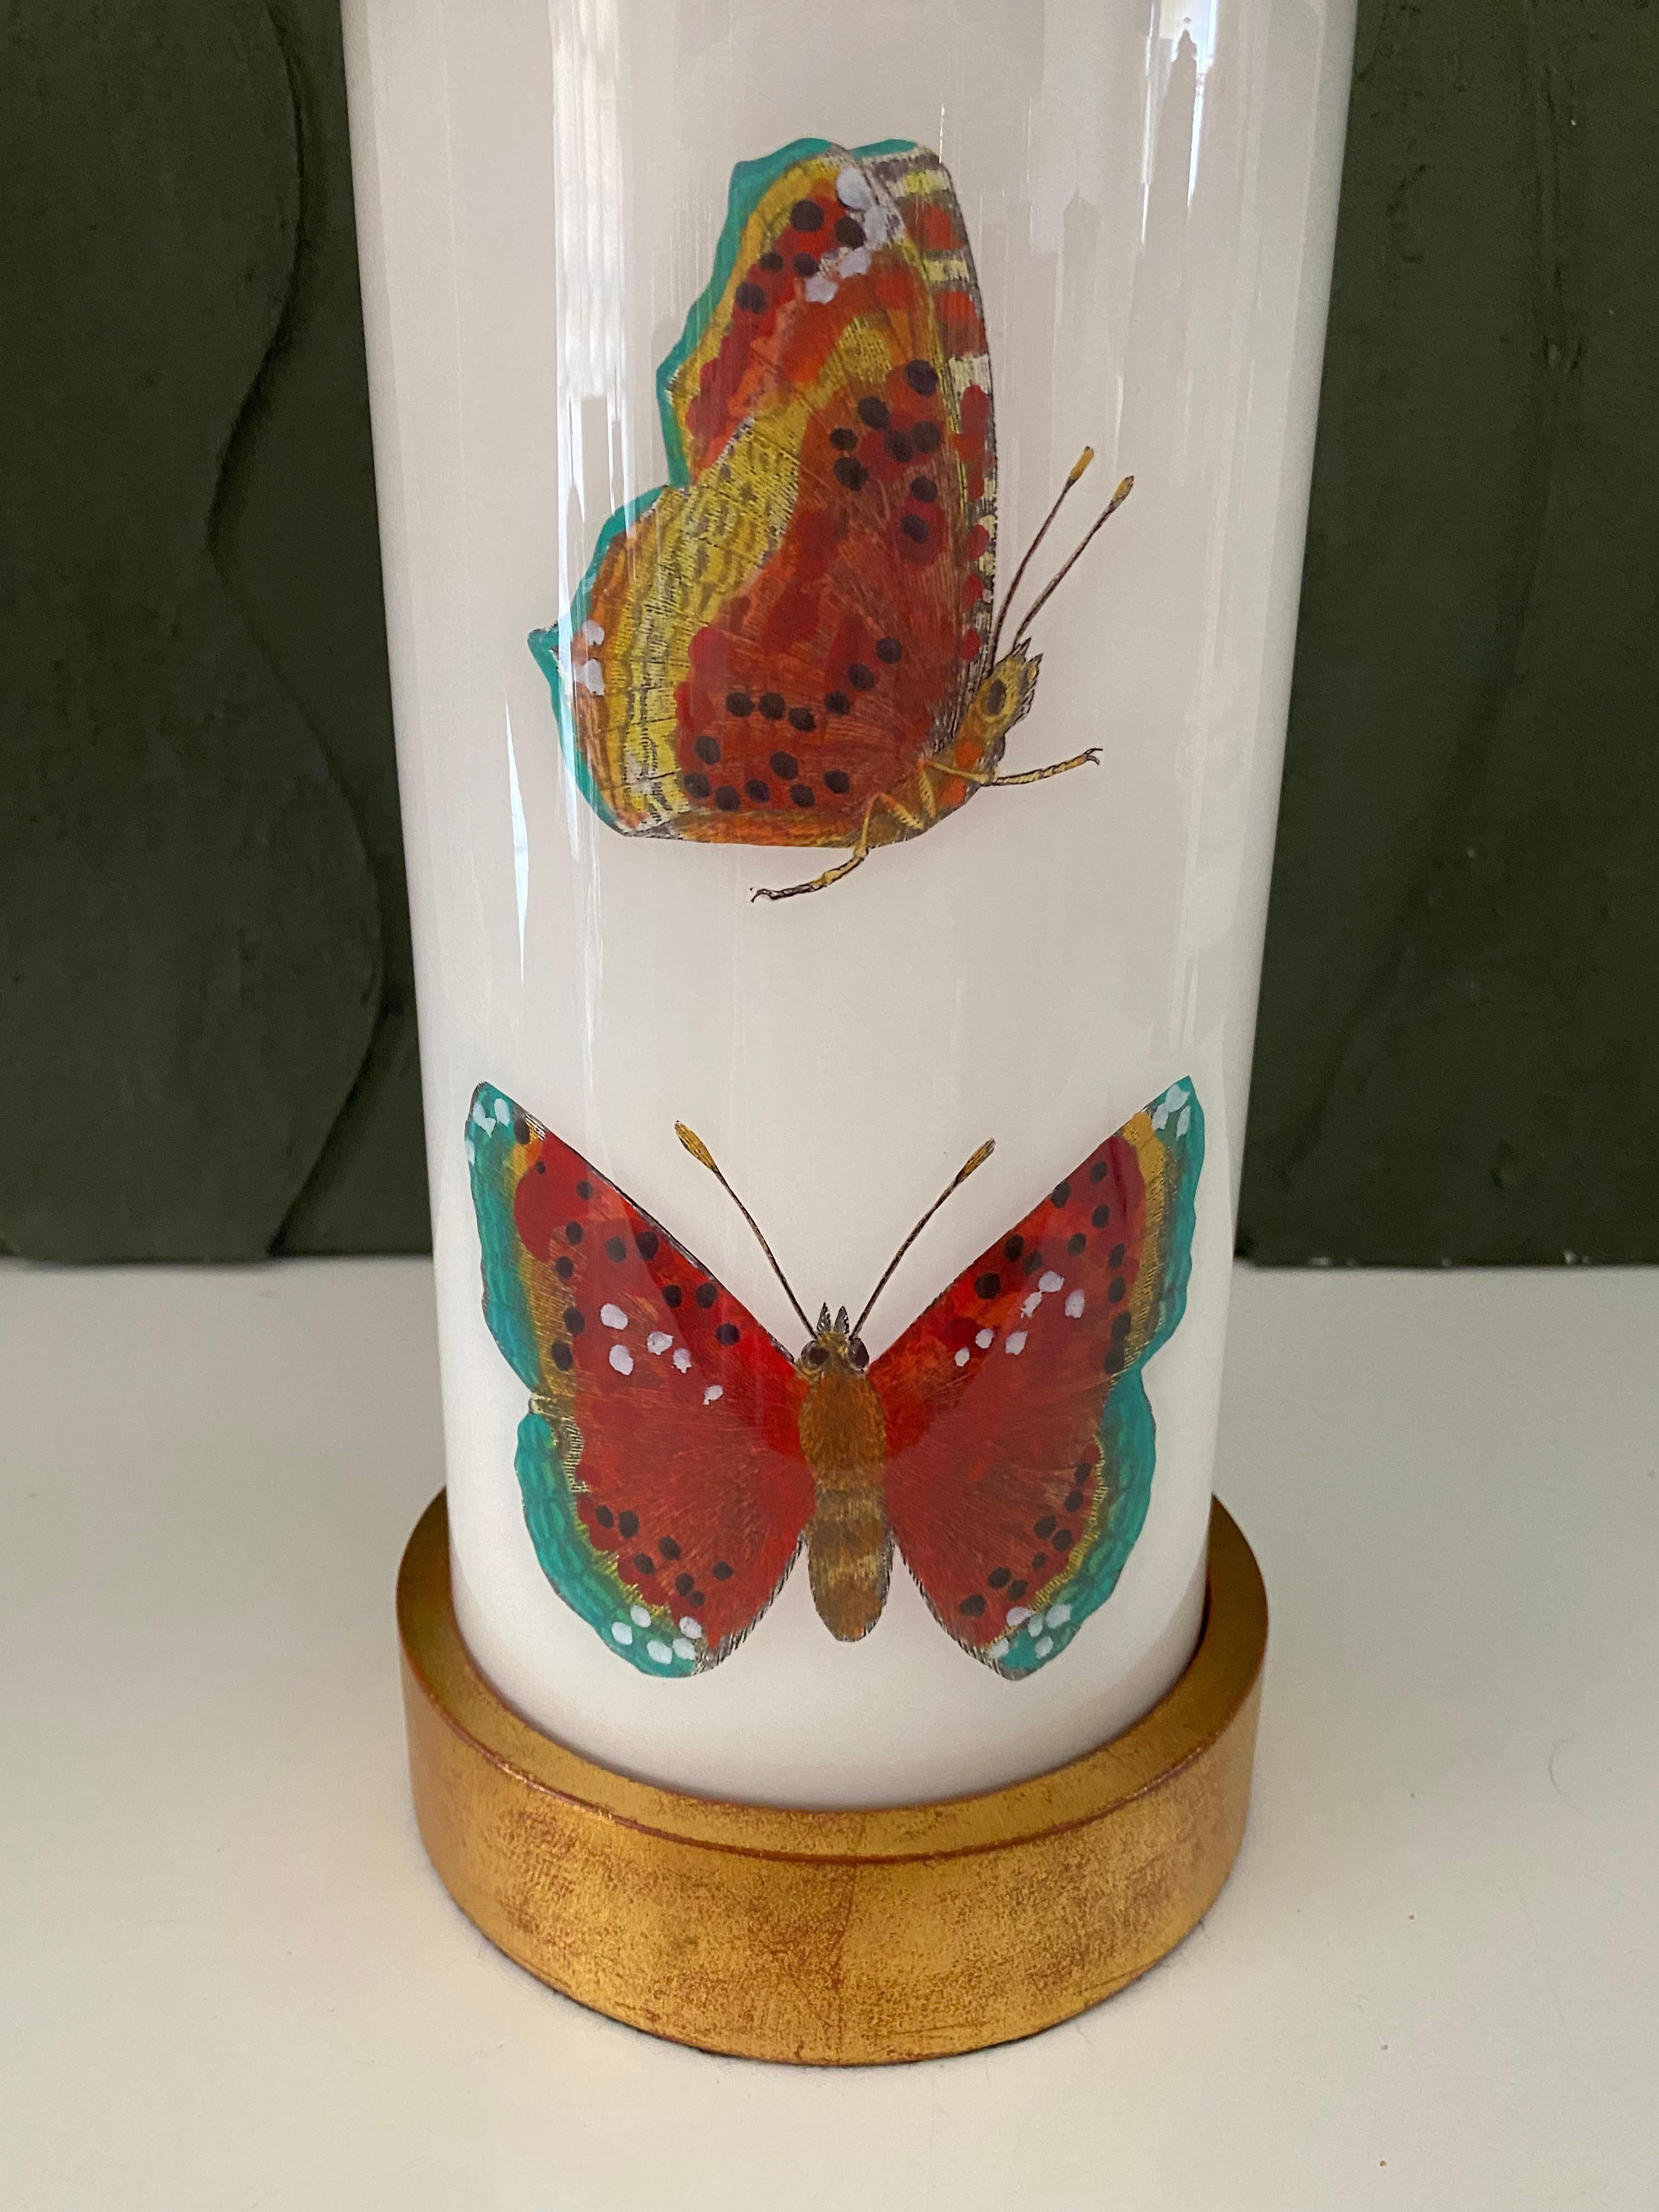 Fabriqué à la main avec soin à Houston, au Texas. Cette lampe en verre présente une sélection de gravures du 18ème siècle, colorées à la main, représentant de magnifiques insectes dans des tons rouge terracotta sur un fond blanc doux. La base et le